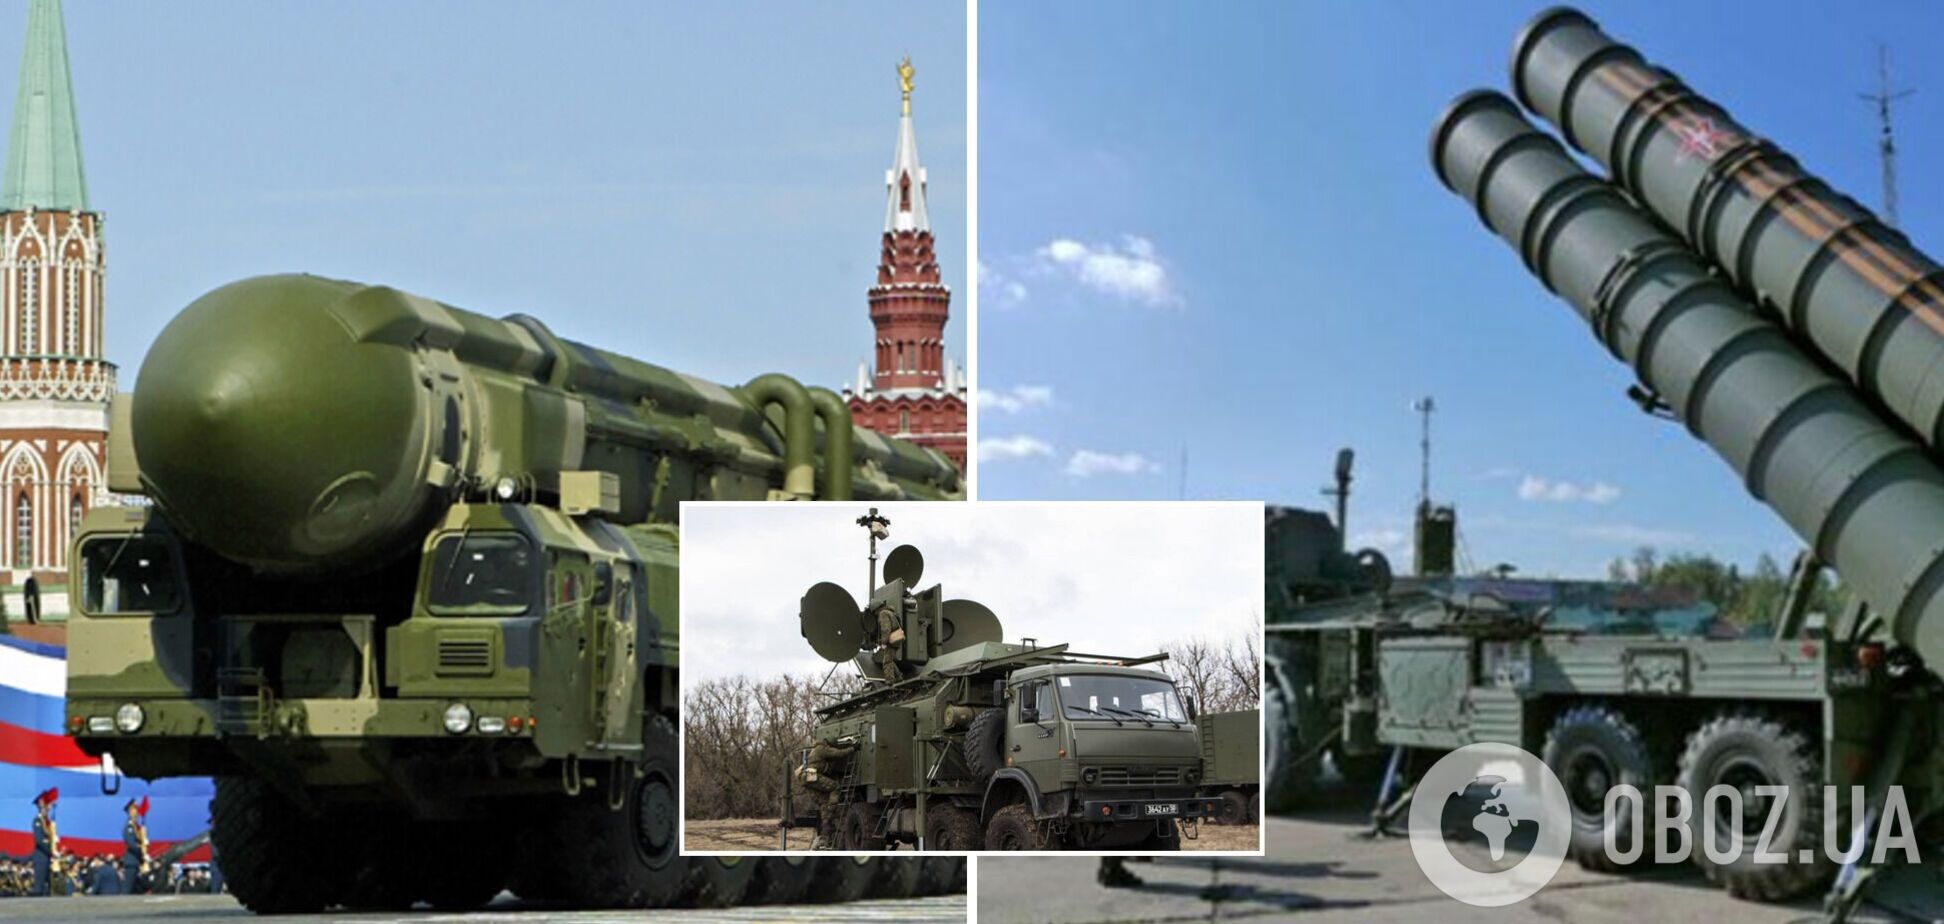 В оружии, которое РФ применяла против Украины, обнаружены комплектующие западного производства